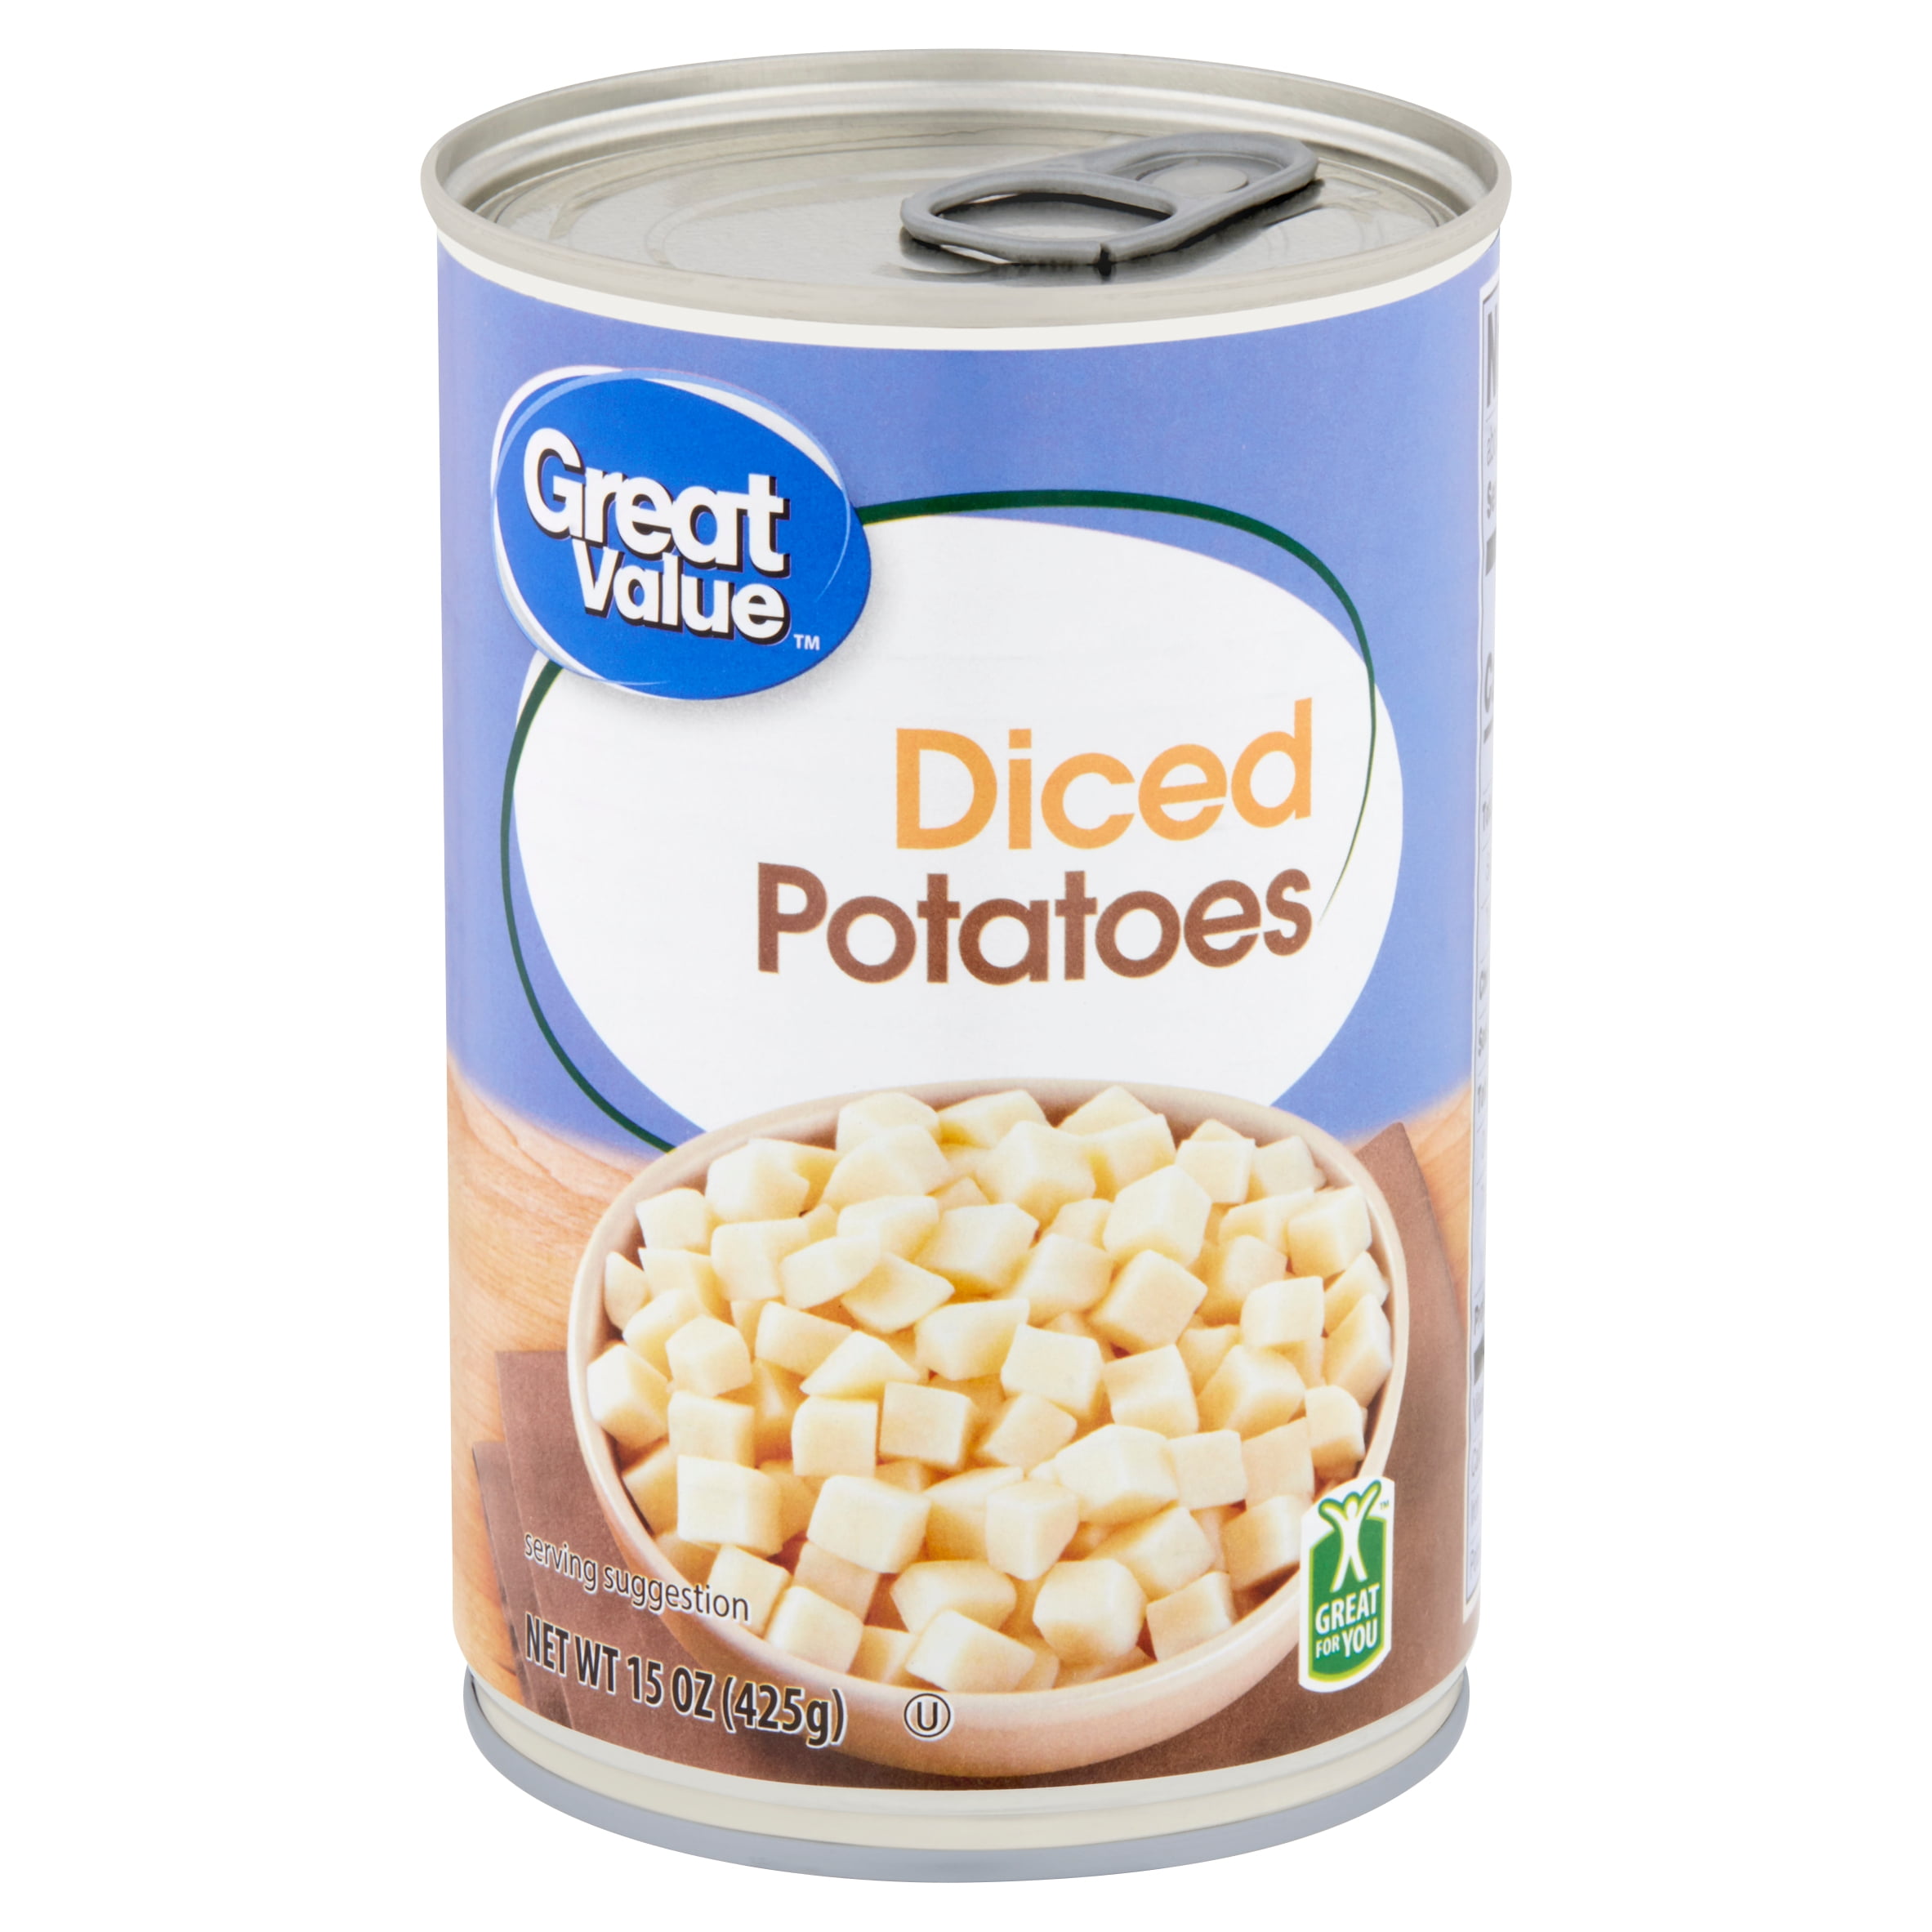 Great Value Diced Potatoes, 15 oz - Walmart.com - Walmart.com